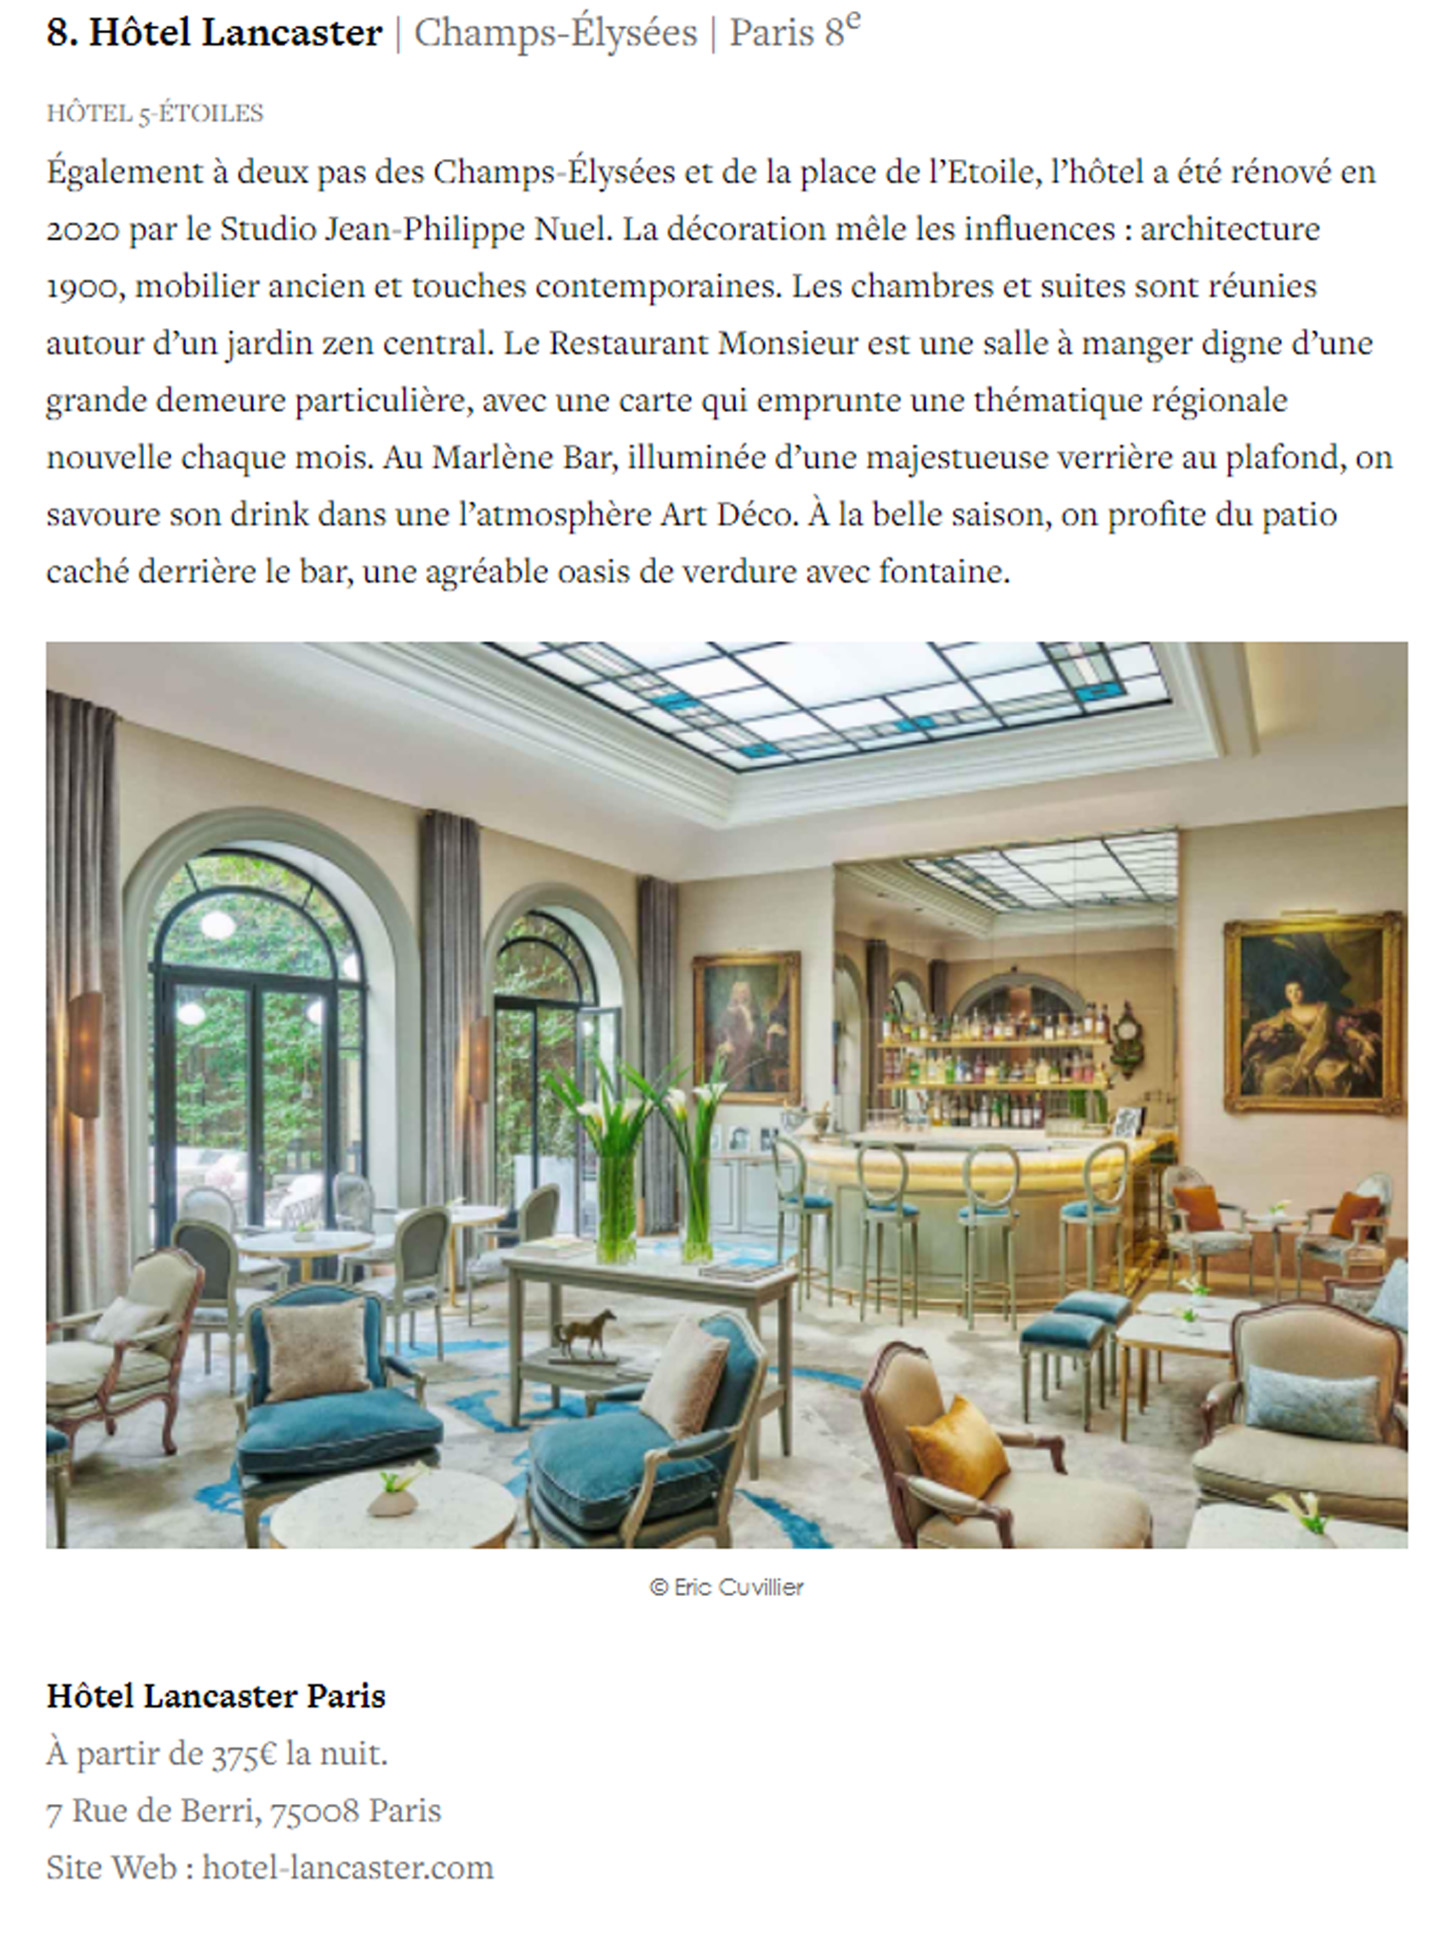 article sur l'hotel le lancaster dans le magazine yonder, hotel de luxe décoré par le studio jean-philippe nuel, architecture d'intérieur, hotel parisien 5 étoiles